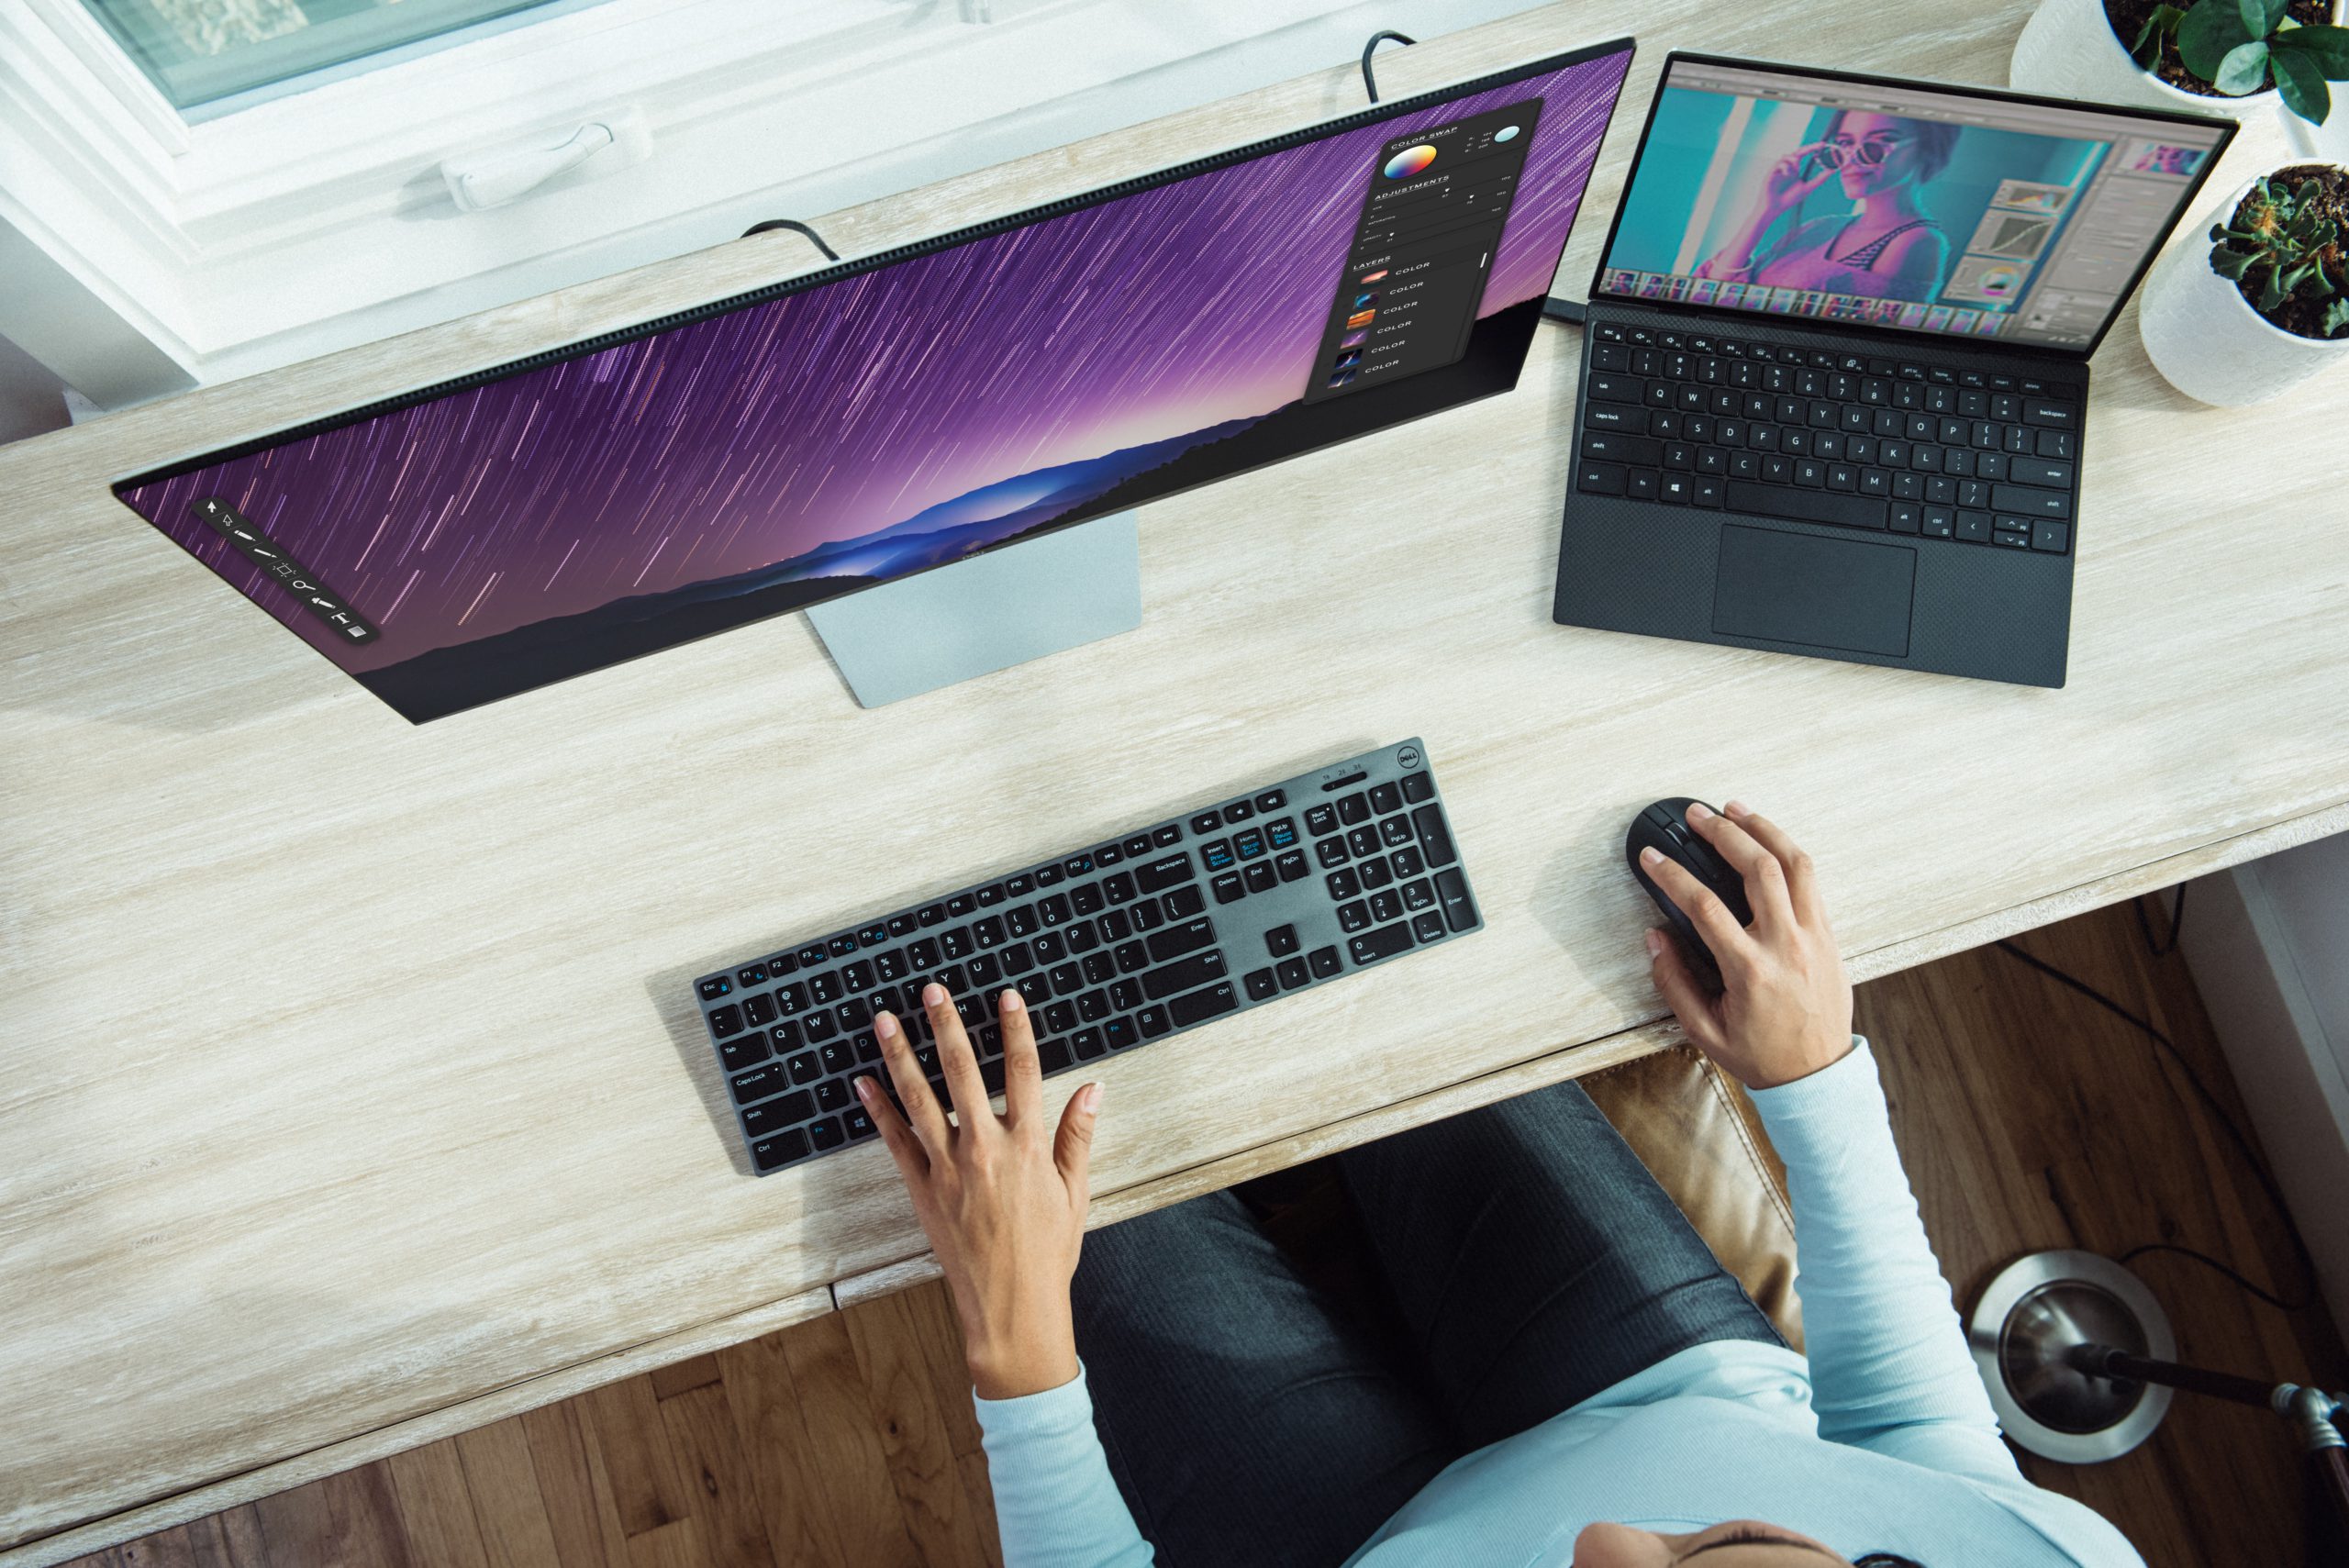 Zu sehen ist aus der Vogelperspektive ein PC-Arbeitsplatz mit Laptop, Monitor, Tastatur und Maus, an dem eine Frau arbeitet. Der Laptop kann Ziel eines Firmware-Angriffs werden. Bild: Unsplash/XPS